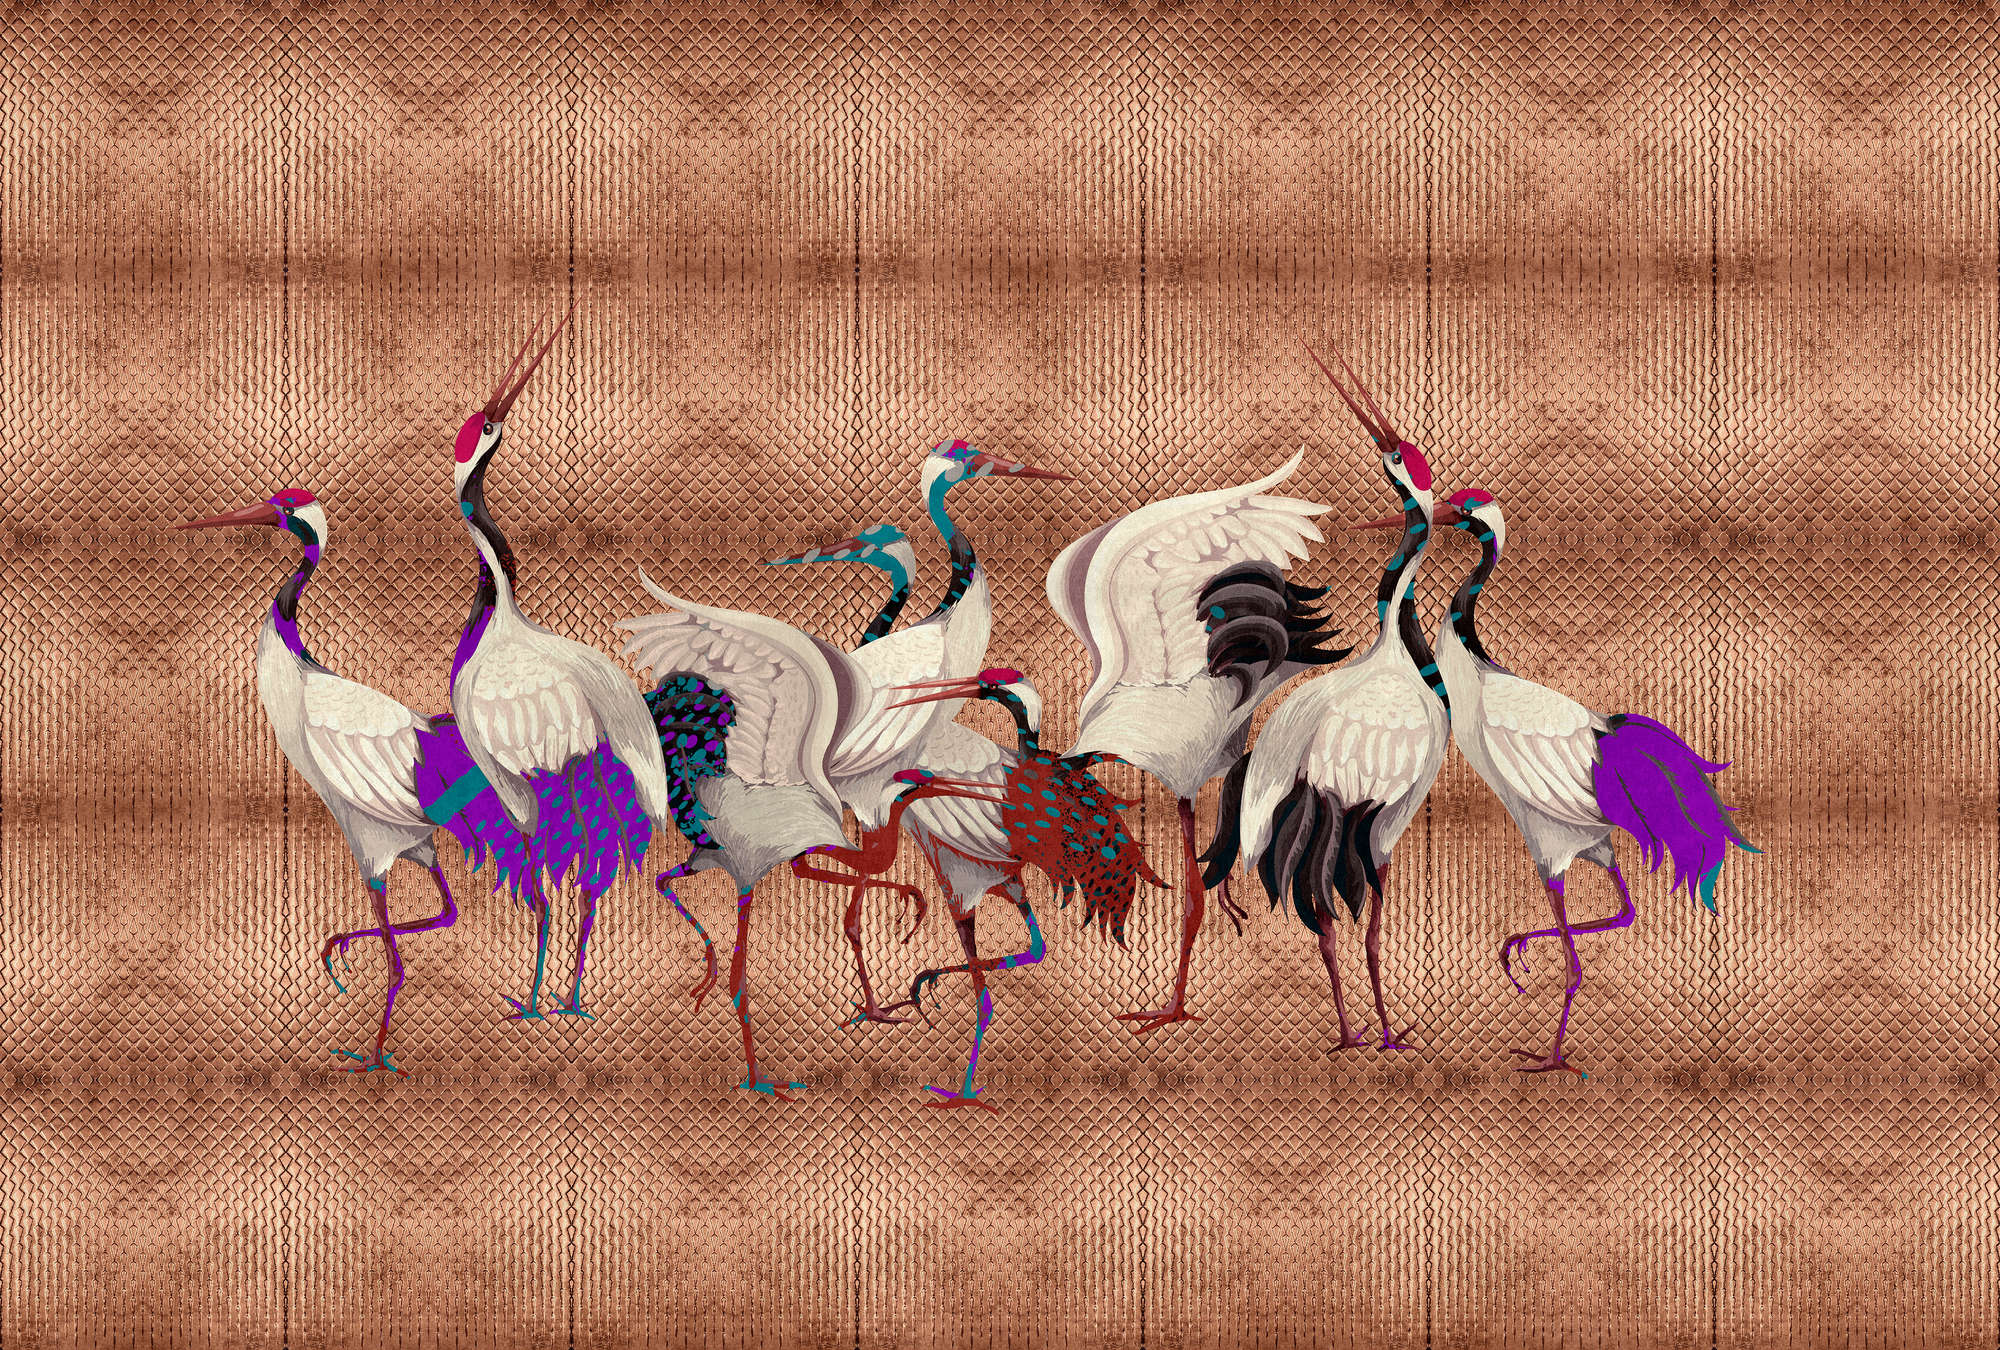             Land van Geluk 2 - Metallic koperbehang met kleurrijk kraanvogelmotief
        